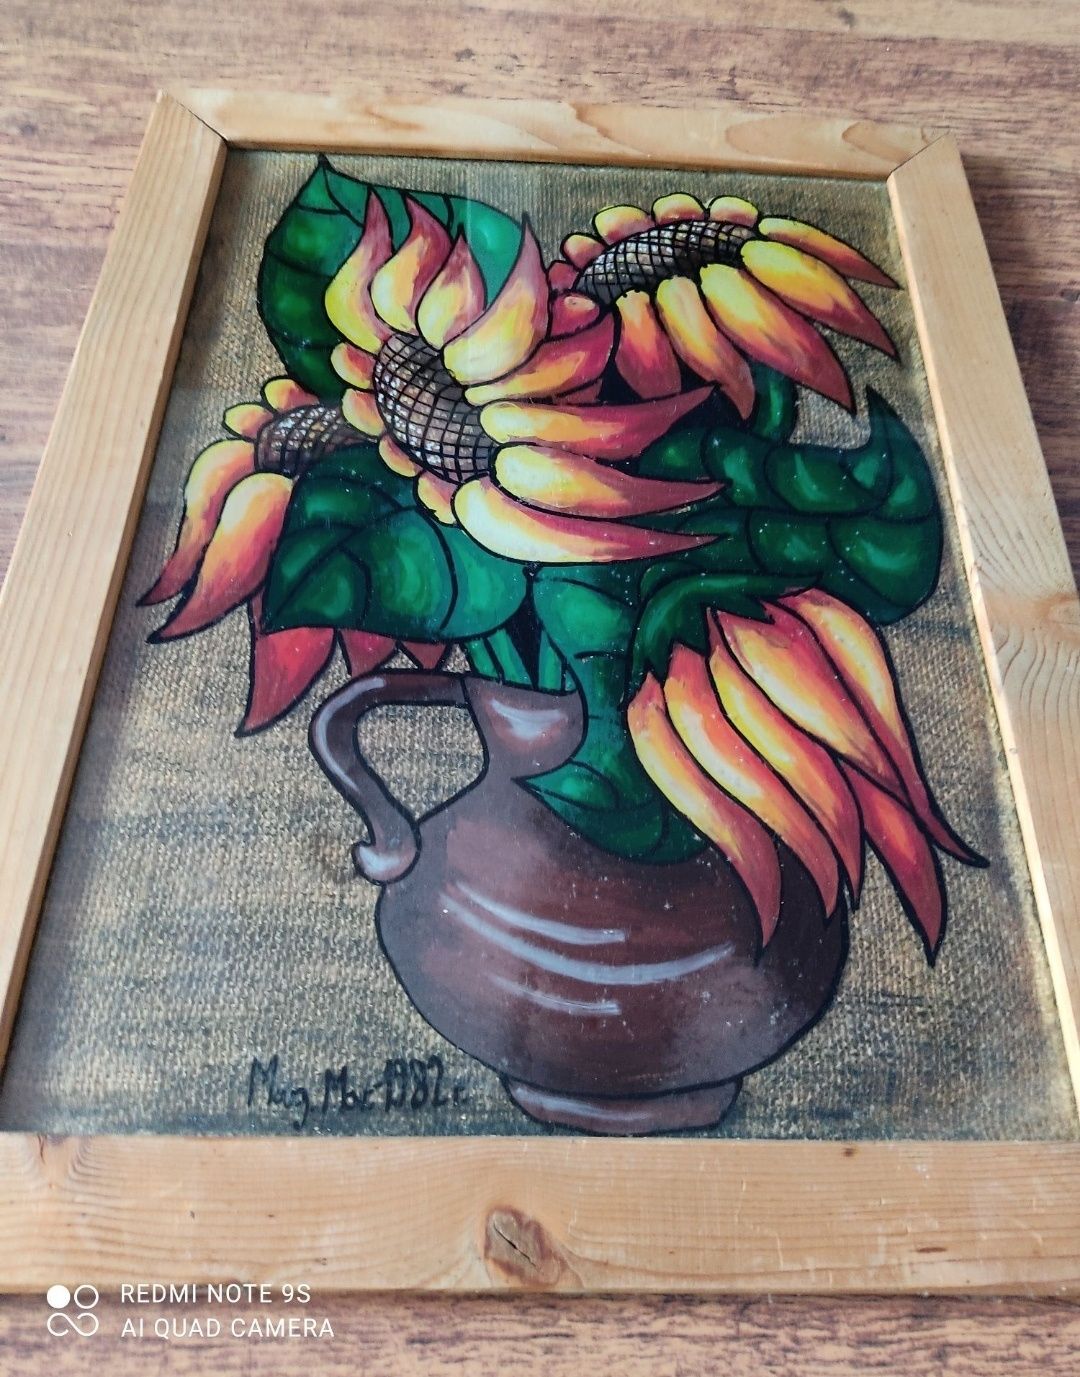 "Szklane słoneczniki"-przepiękny obraz malowany na szkle!